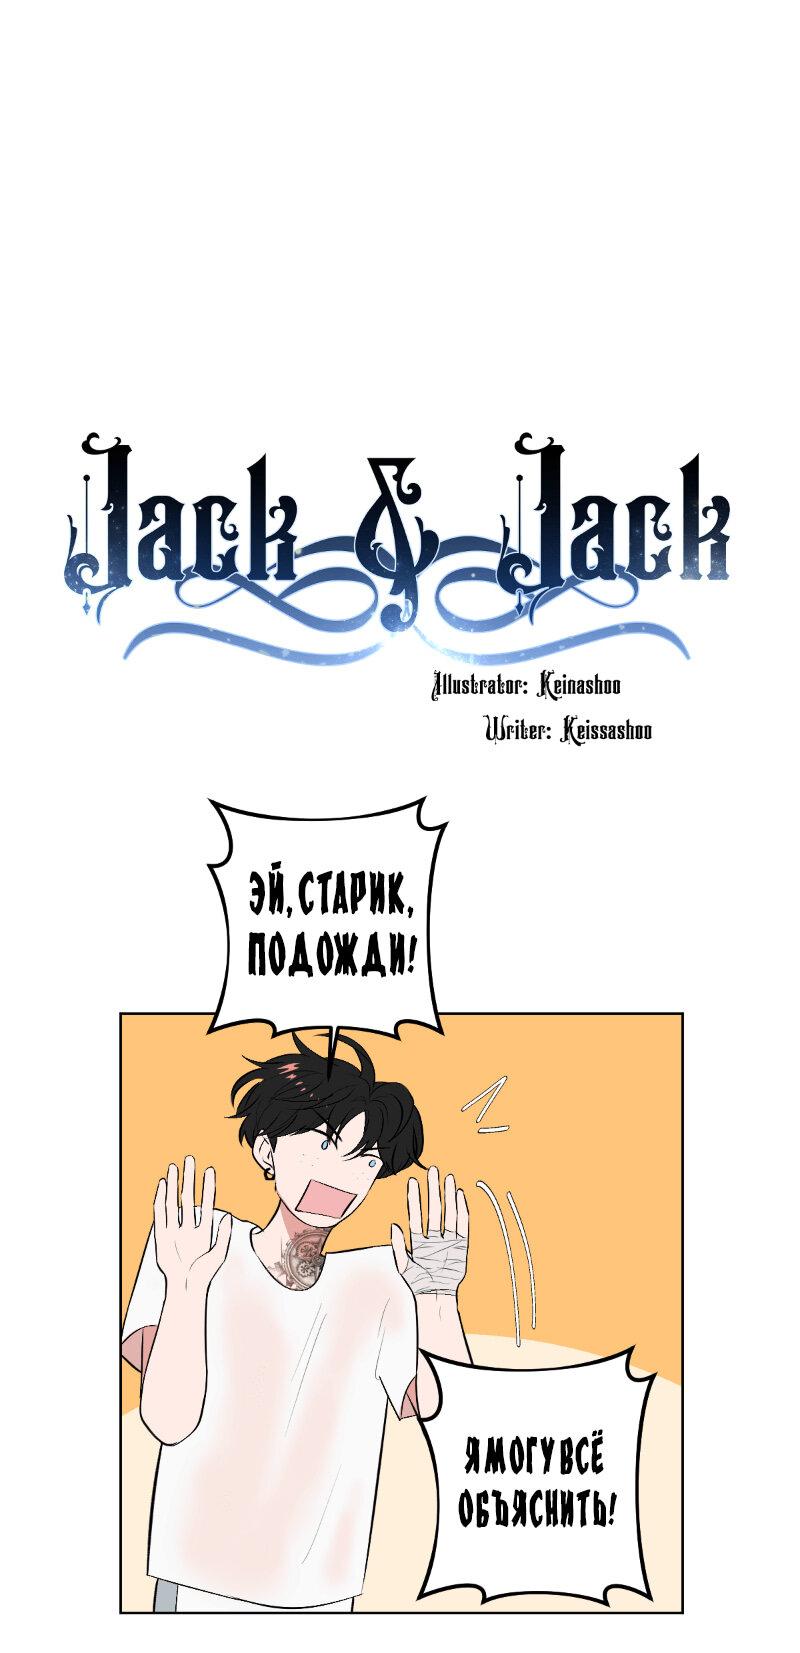 Джек и Джек 1 - 13.1